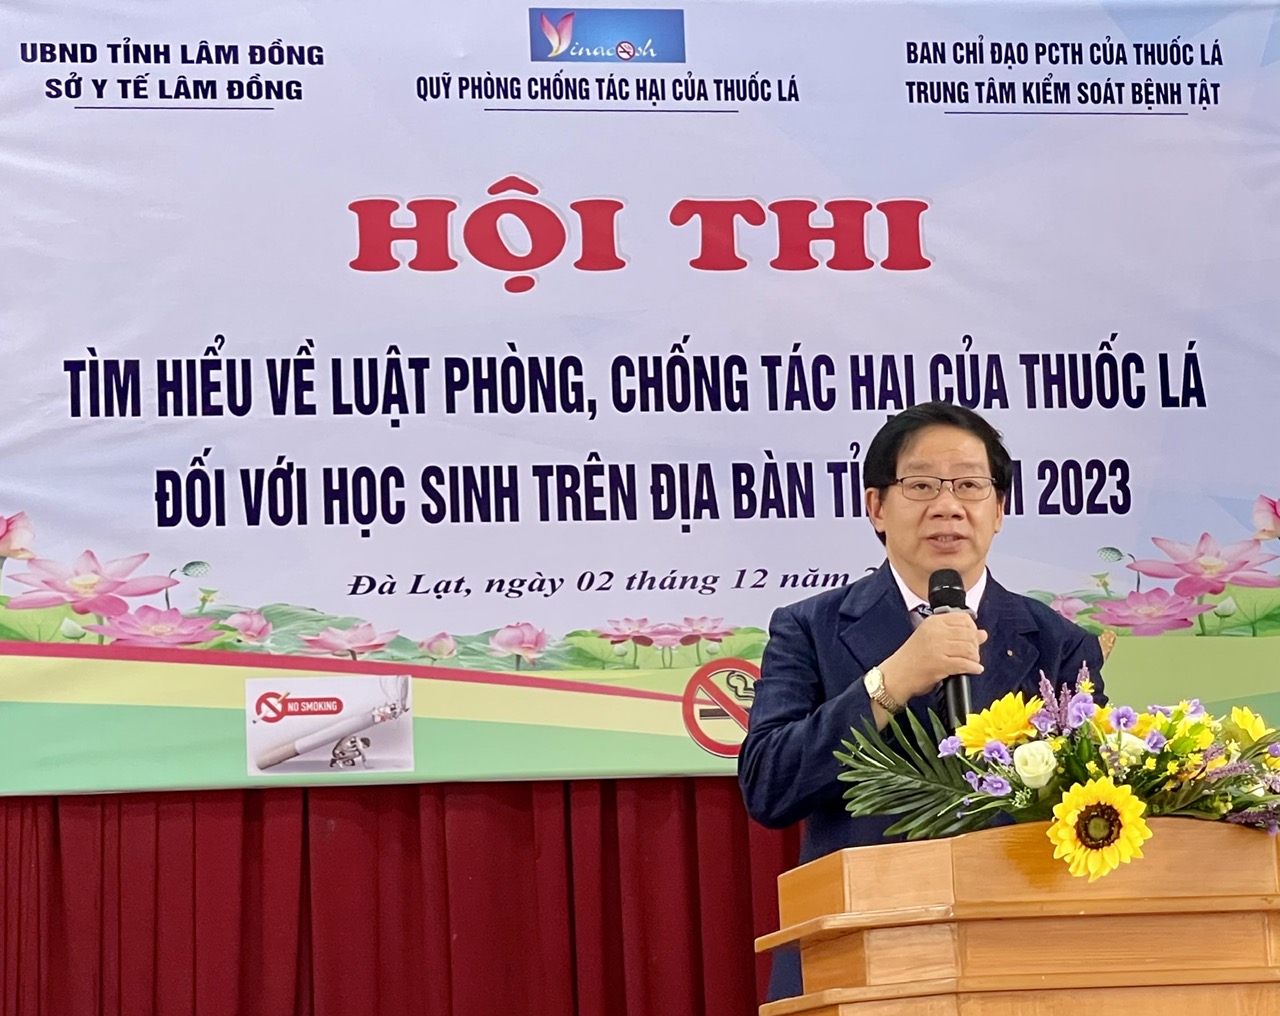 Ông Nguyễn Quốc Minh –Giám đốc Trung tâm Kiểm soát bệnh tật Lâm Đồng phát biểu khai mạc hội thi